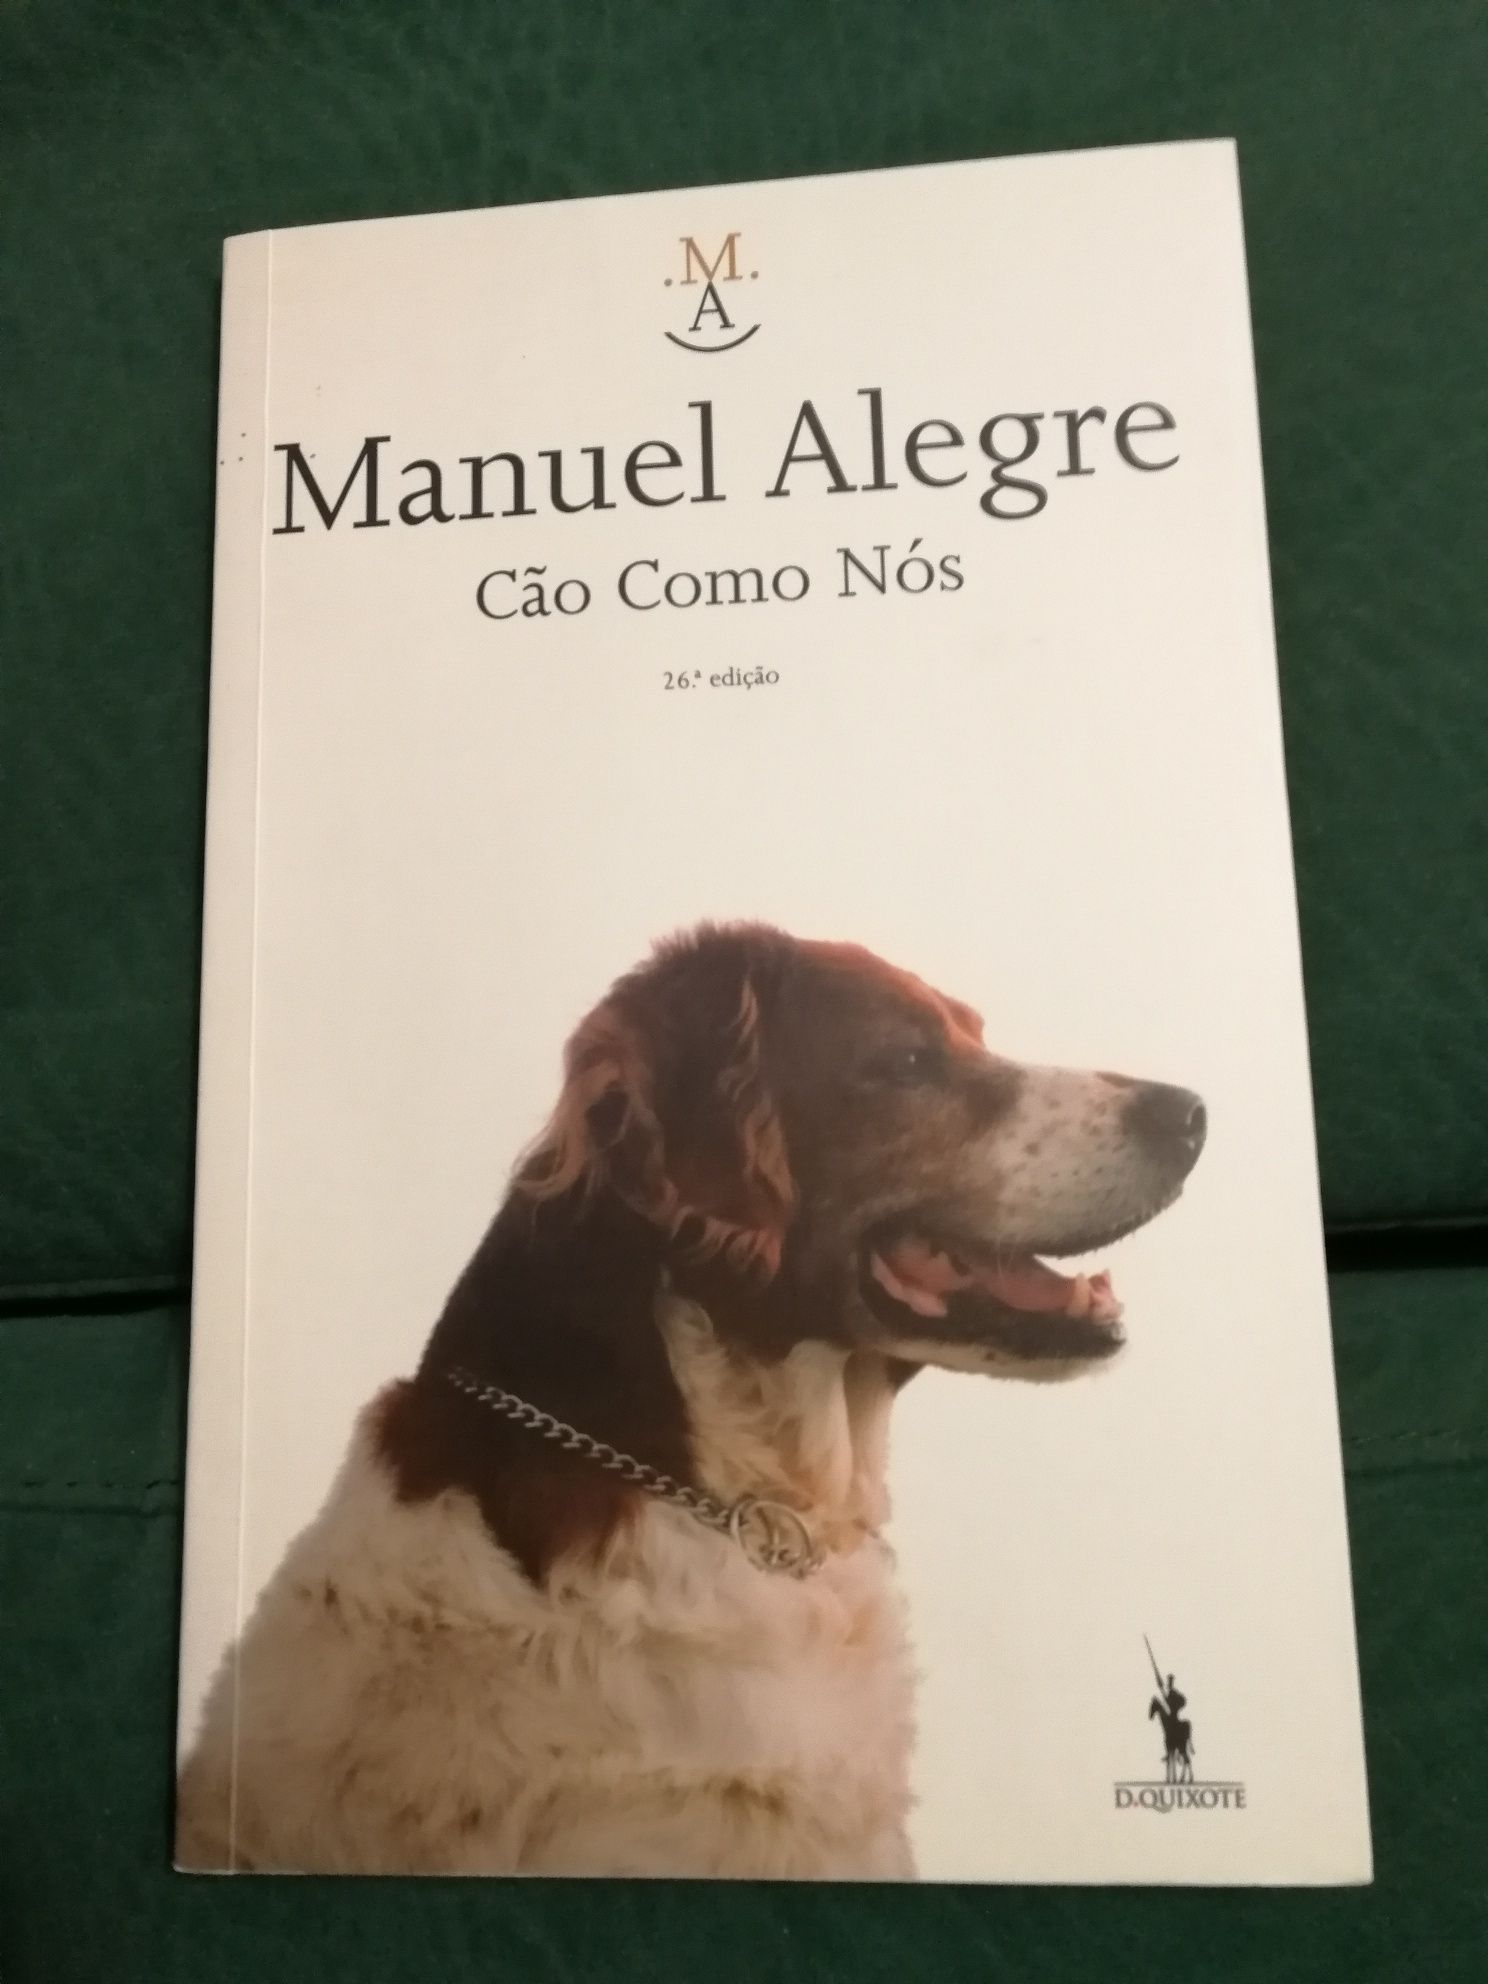 Livro "Cão Como Nós" de Manuel Alegre